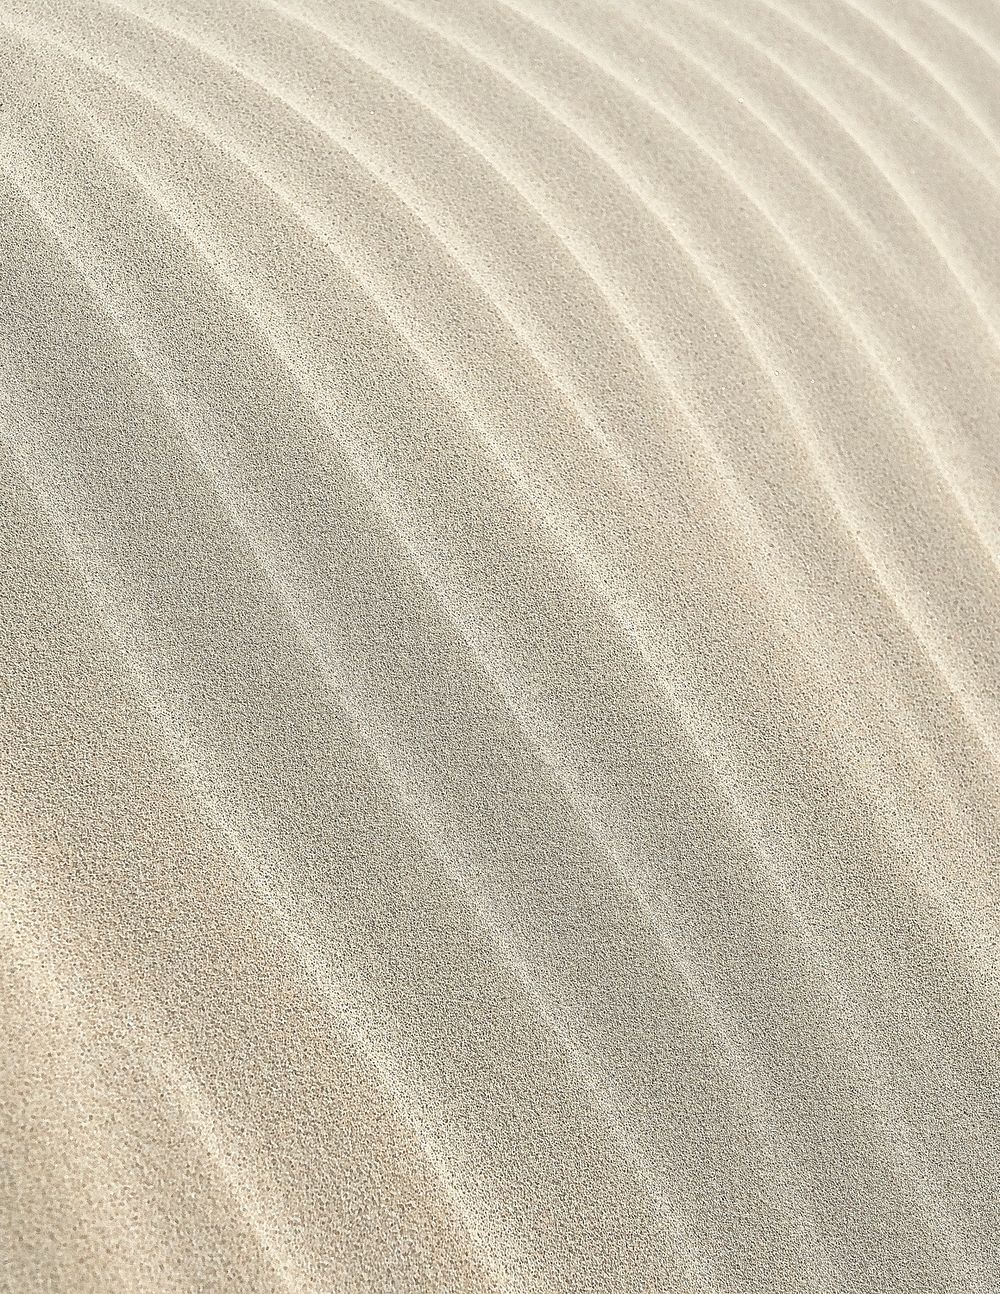 White sand texture background, wavy line design